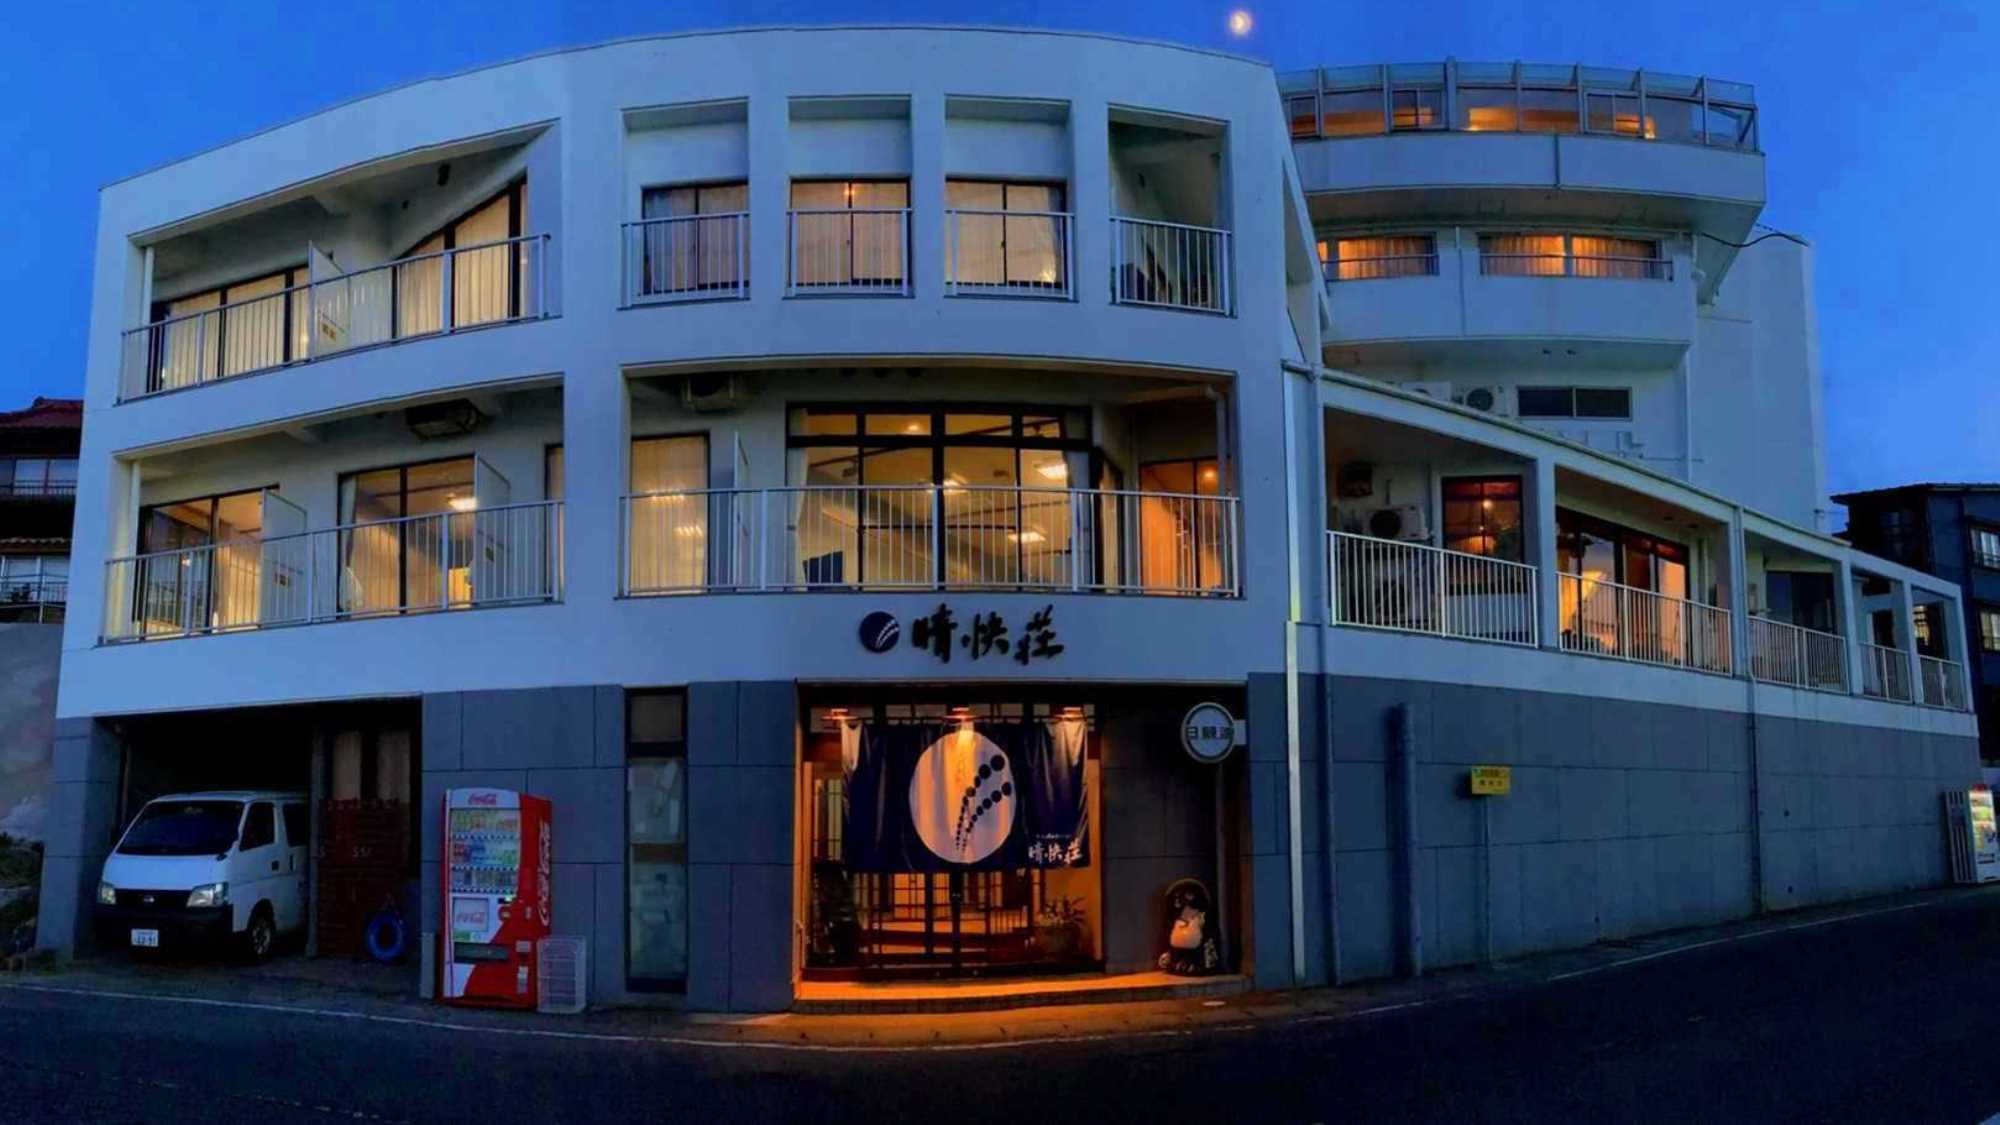 愛知県の離島。日間賀島へタコづくしの旅に便利なホテル